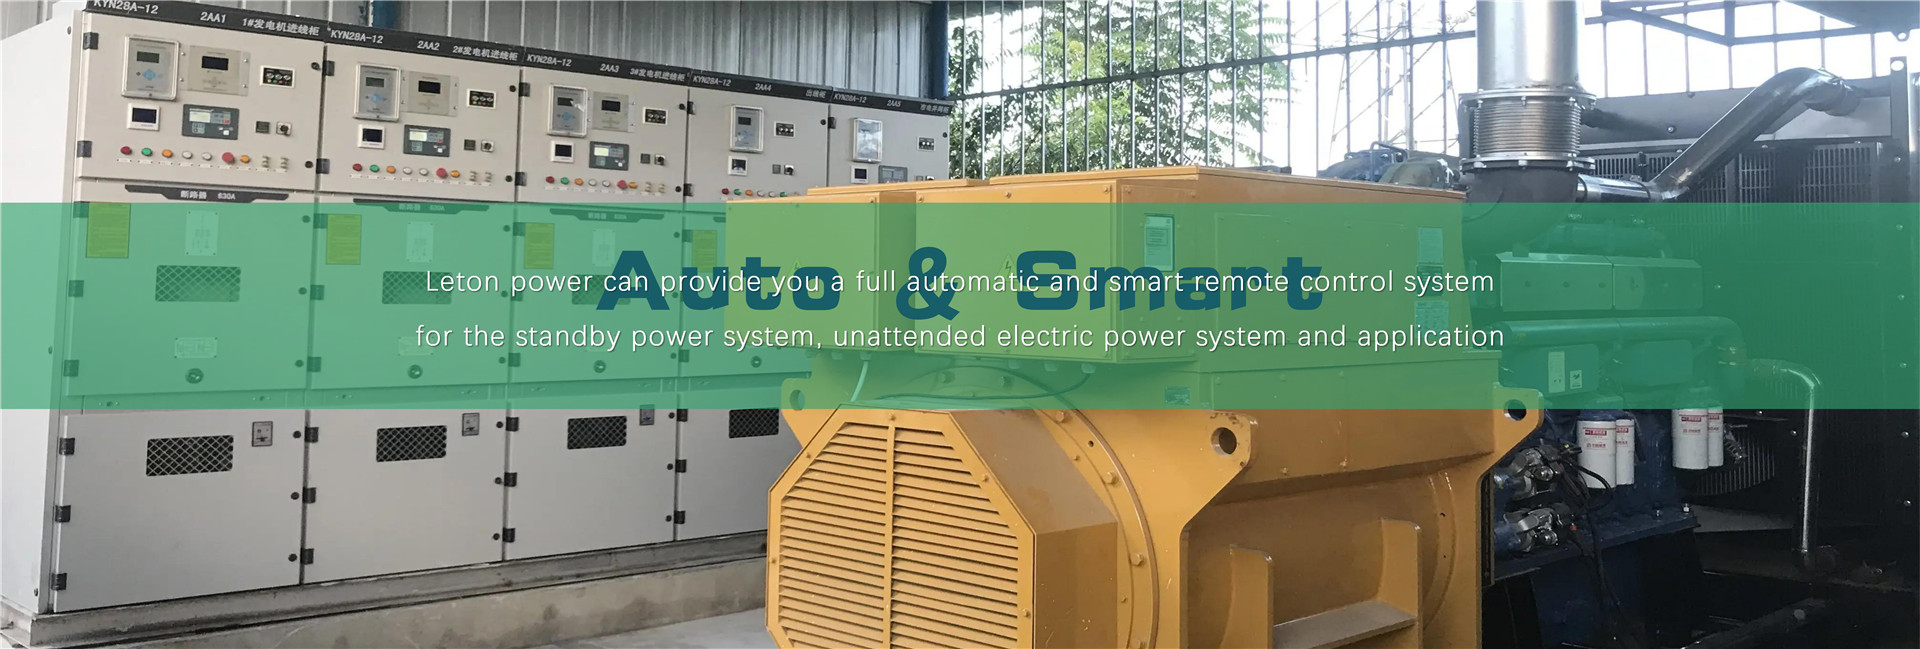 AMF ATS Дизель генераторын алсын удирдлагатай автомат дизель генератор Leton powerImage